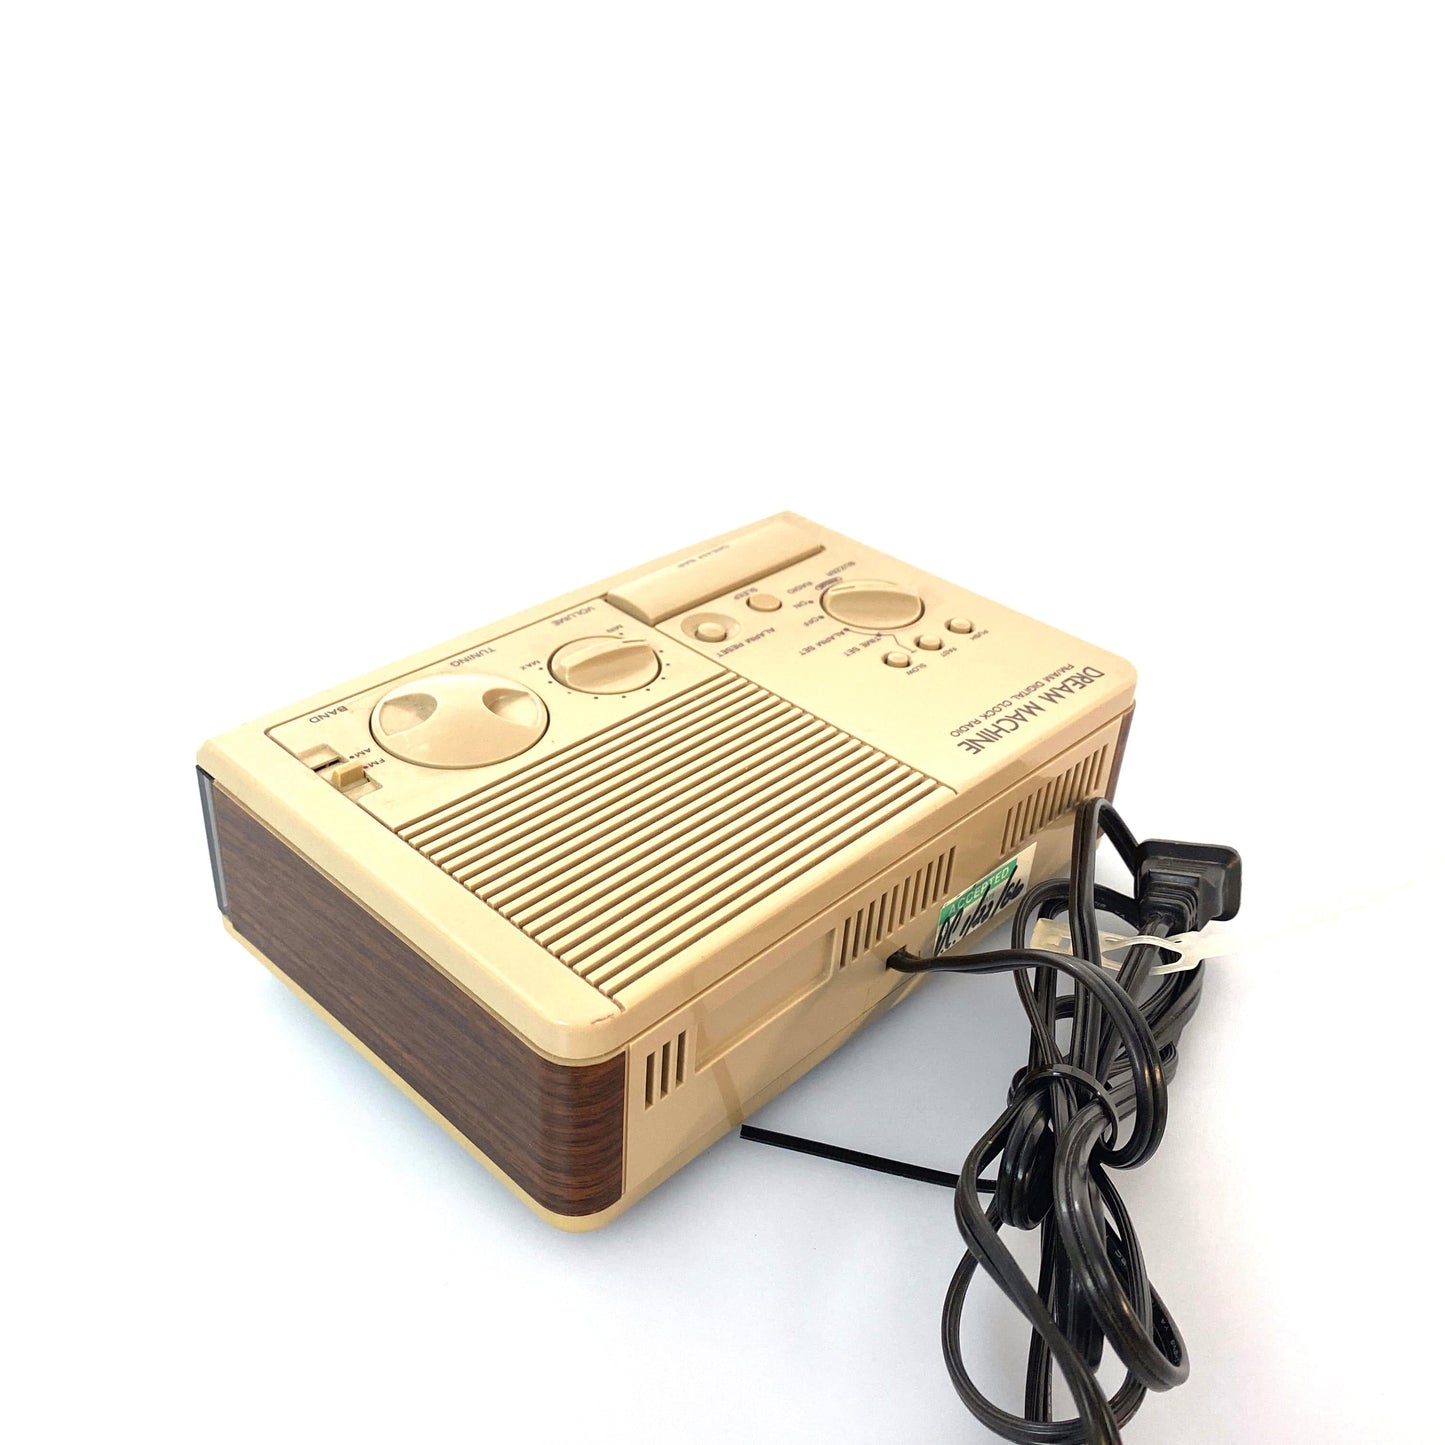 Vintage Sony Dream Machine ICF-C3W Wood Digital Alarm Clock AM FM Radio